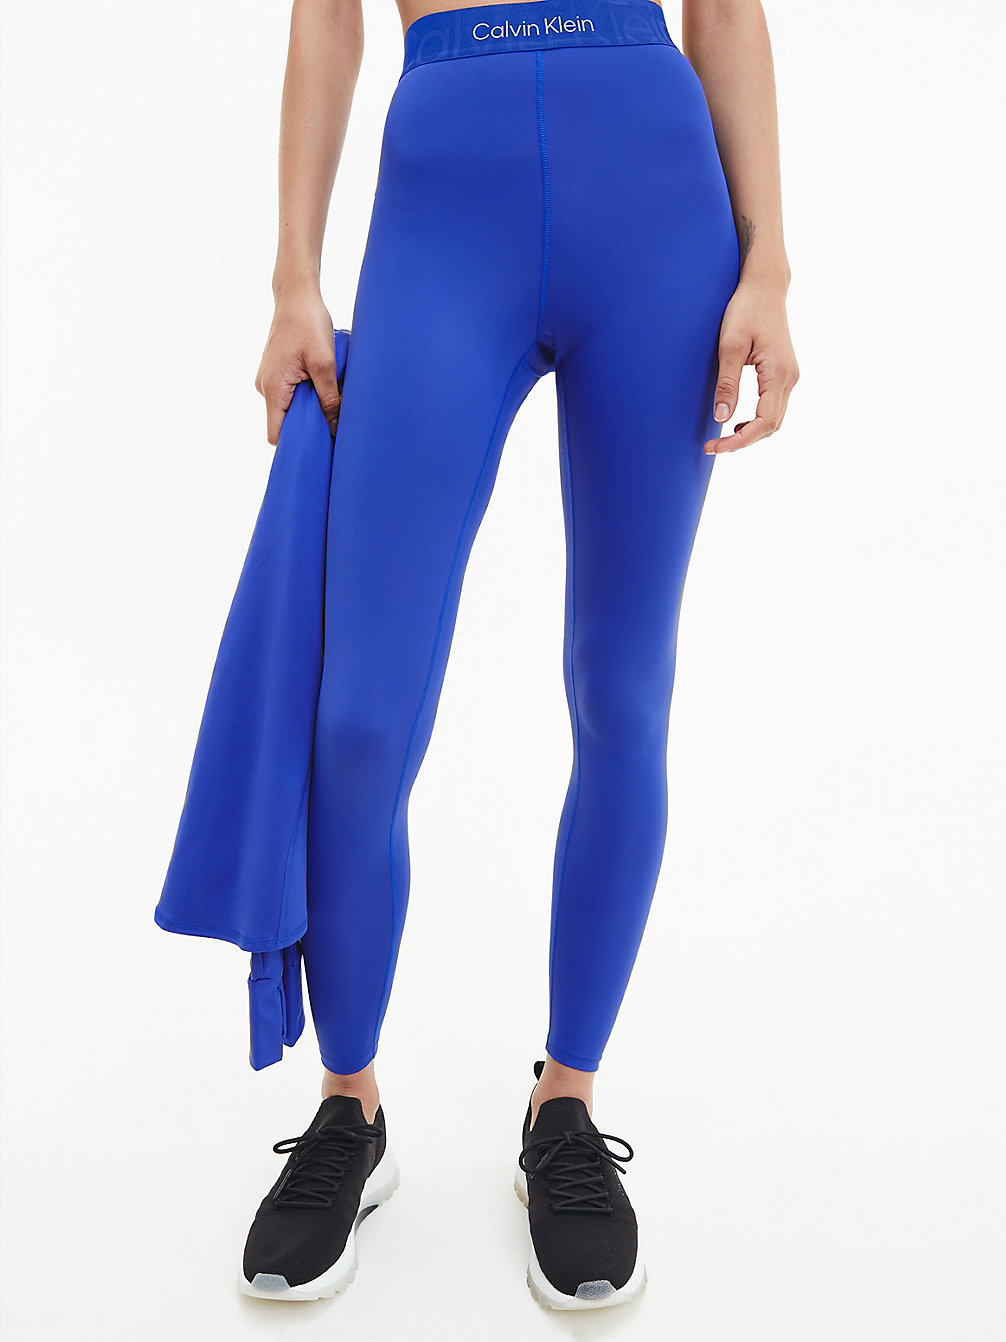 CLEMATIS BLUE Legging De Sport 7/8 Recyclé undefined femmes Calvin Klein